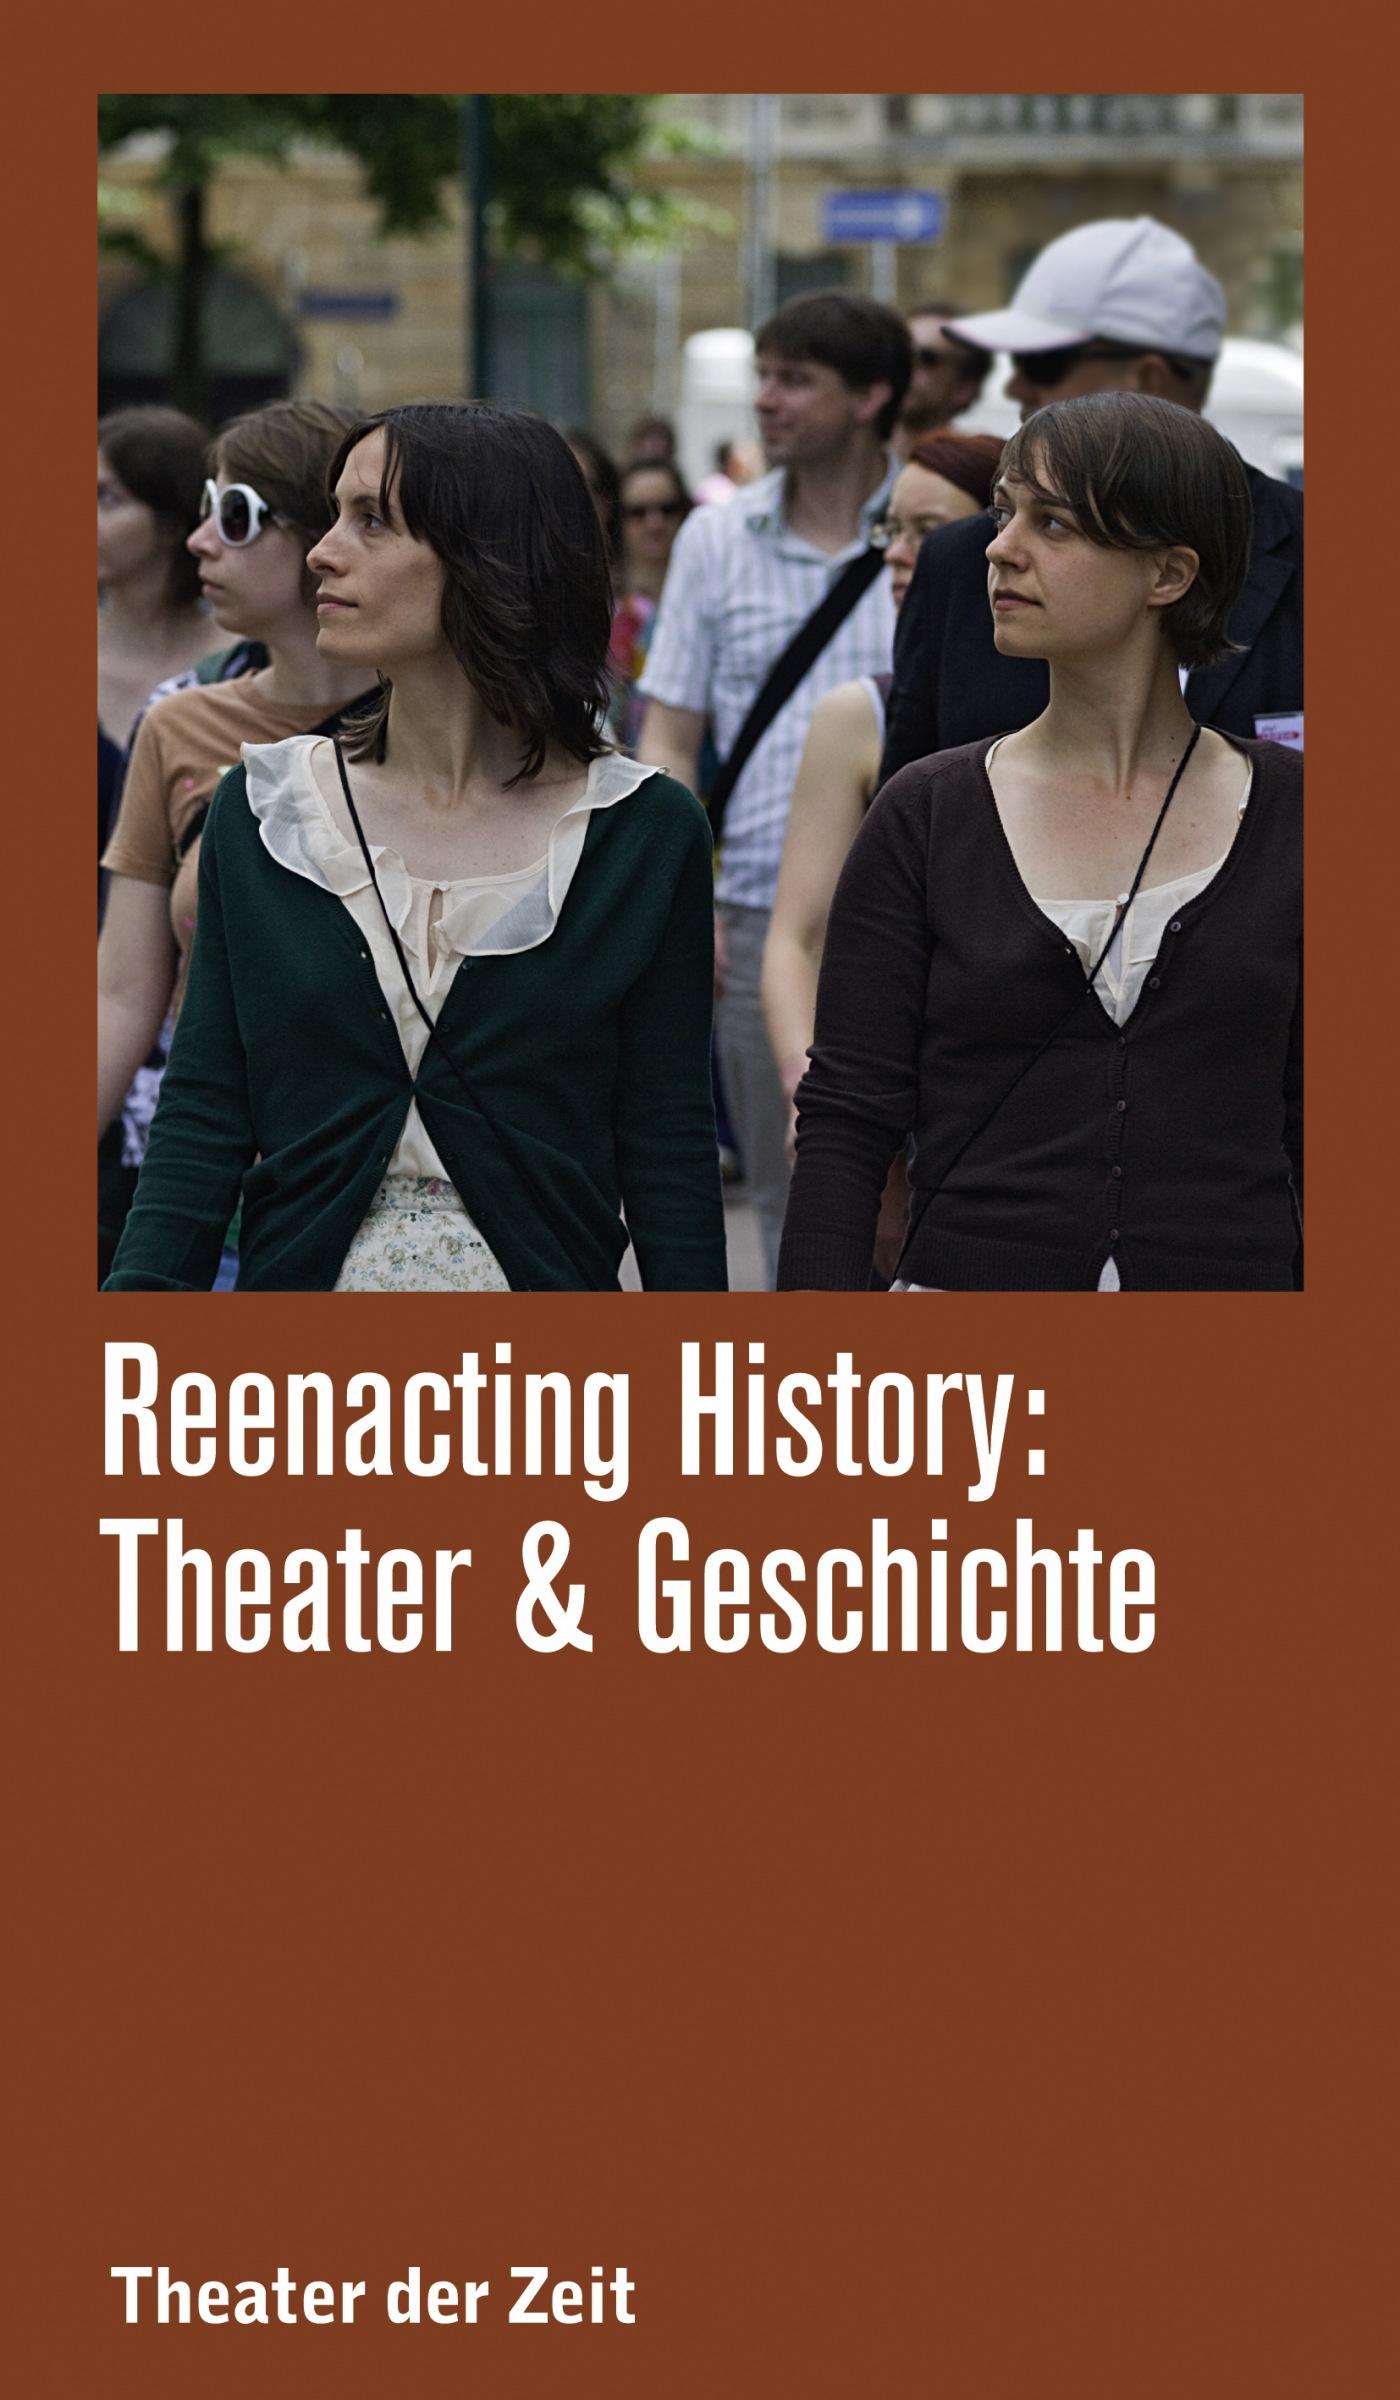 Recherchen 109 "Reenacting History: Theater & Geschichte"